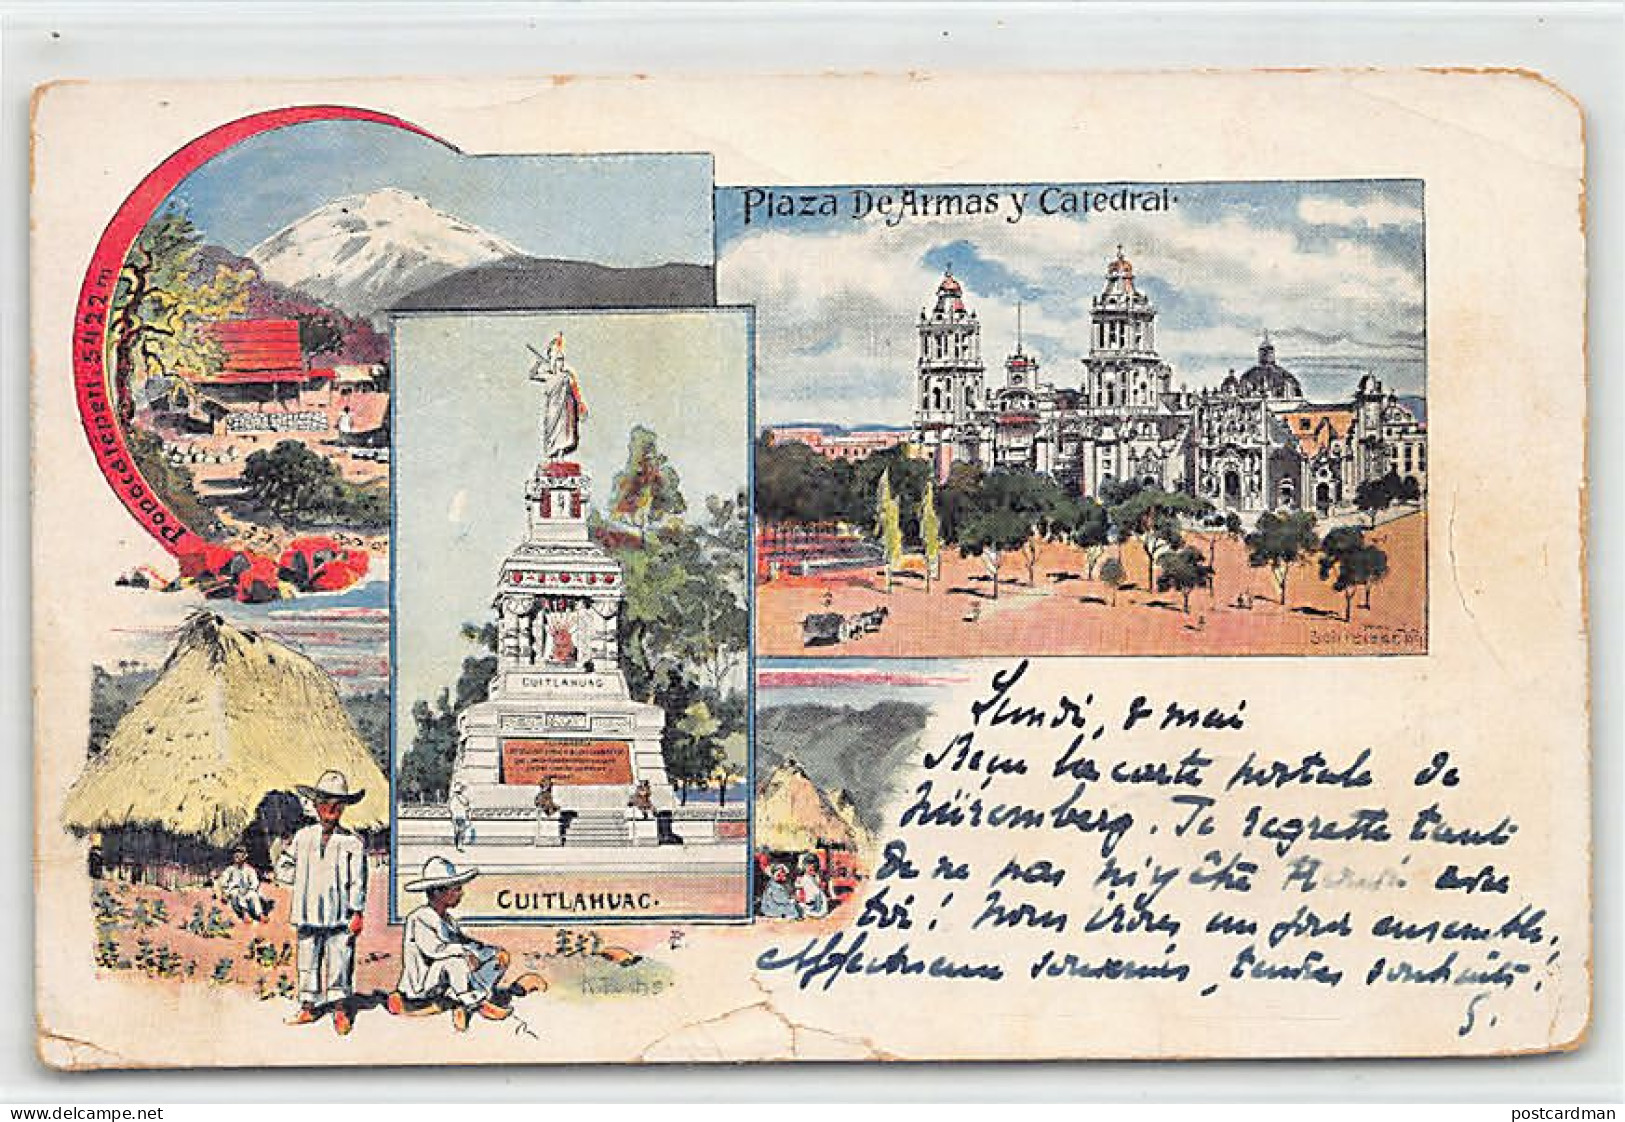 Ciudad De México - Plaza De Armas Y Catedral - Cuitláhuac - Popocatépetl - Año 1899 - LITHO Litografía - SEE SCANS FOR  - Mexiko